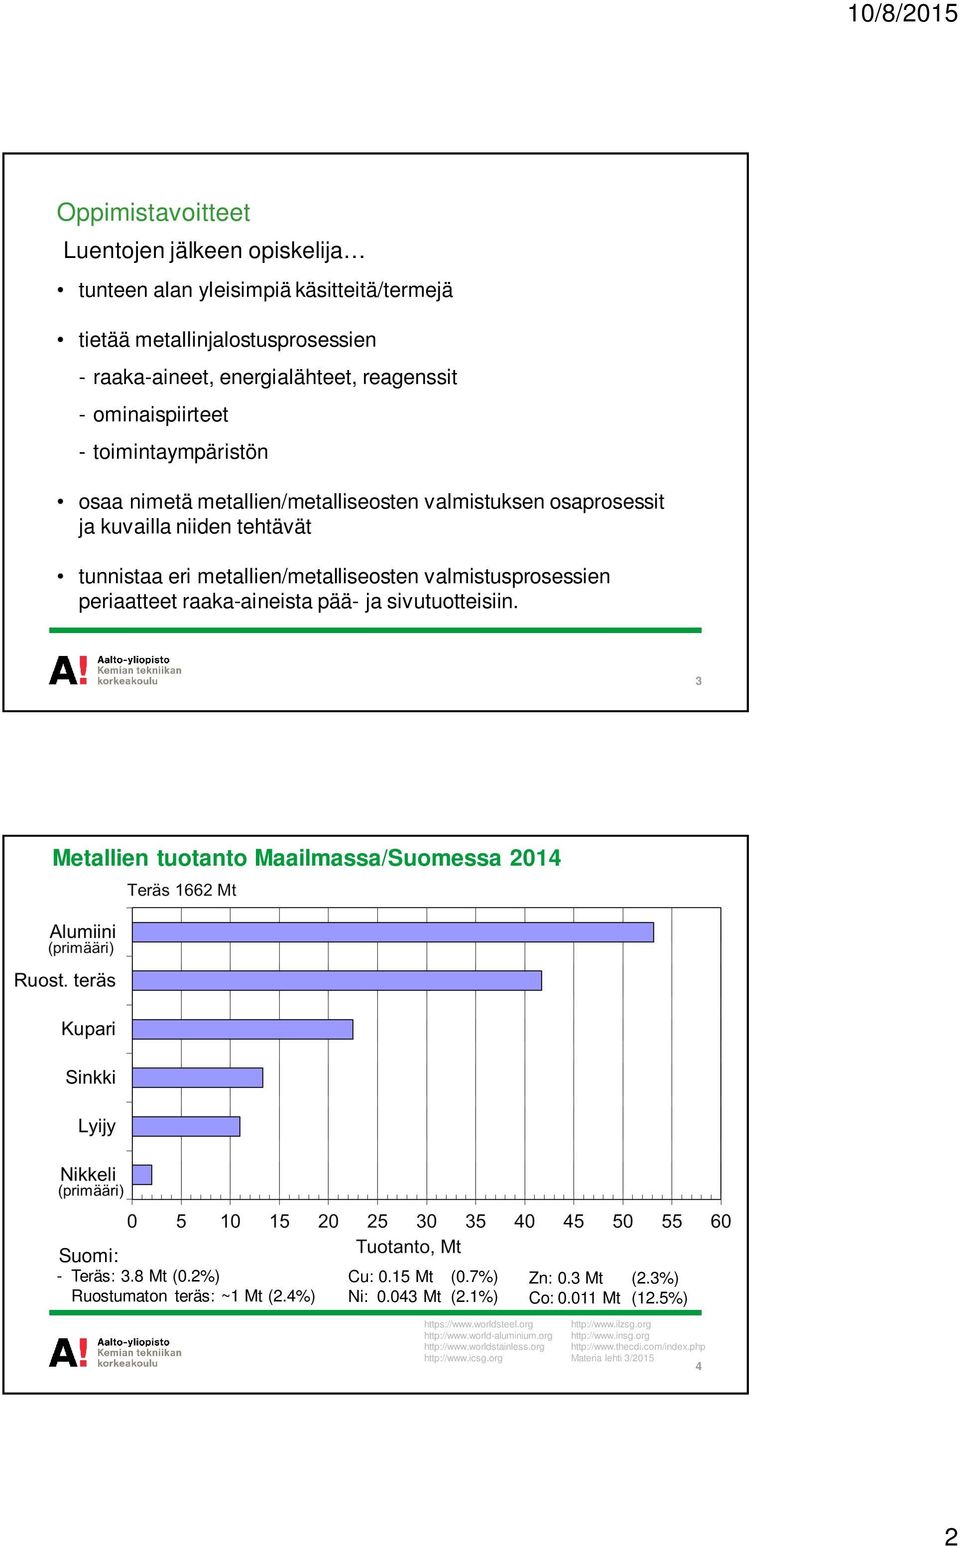 pää- ja sivutuotteisiin. 3 Metallien tuotanto Maailmassa/Suomessa 2014 Suomi: - Teräs: 3.8 Mt (0.2%) Ruostumaton teräs: ~1 Mt (2.4%) Cu: 0.15 Mt (0.7%) Ni: 0.043 Mt (2.1%) Zn: 0.3 Mt (2.3%) Co: 0.